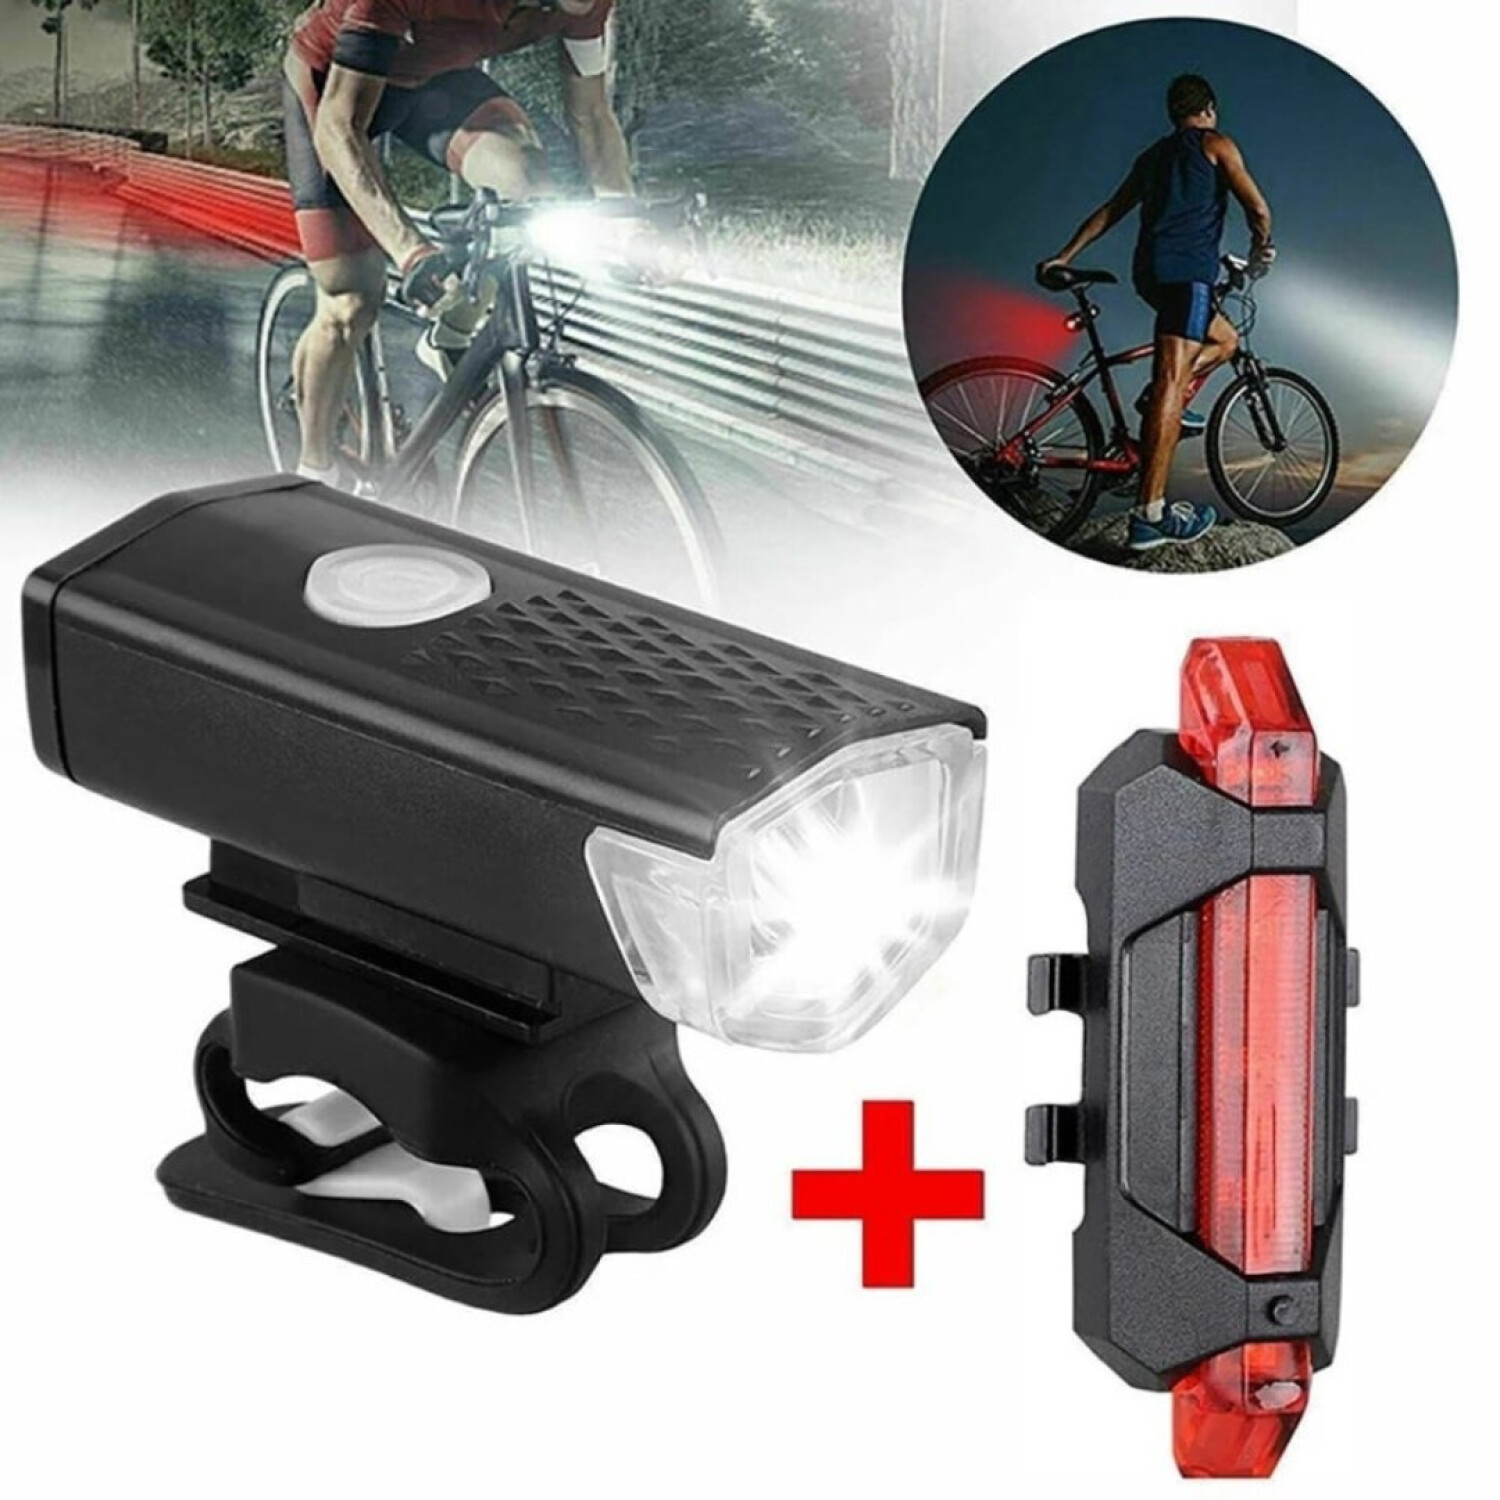 Kit de iluminación para bicicleta. Incluye luz delantera y luz